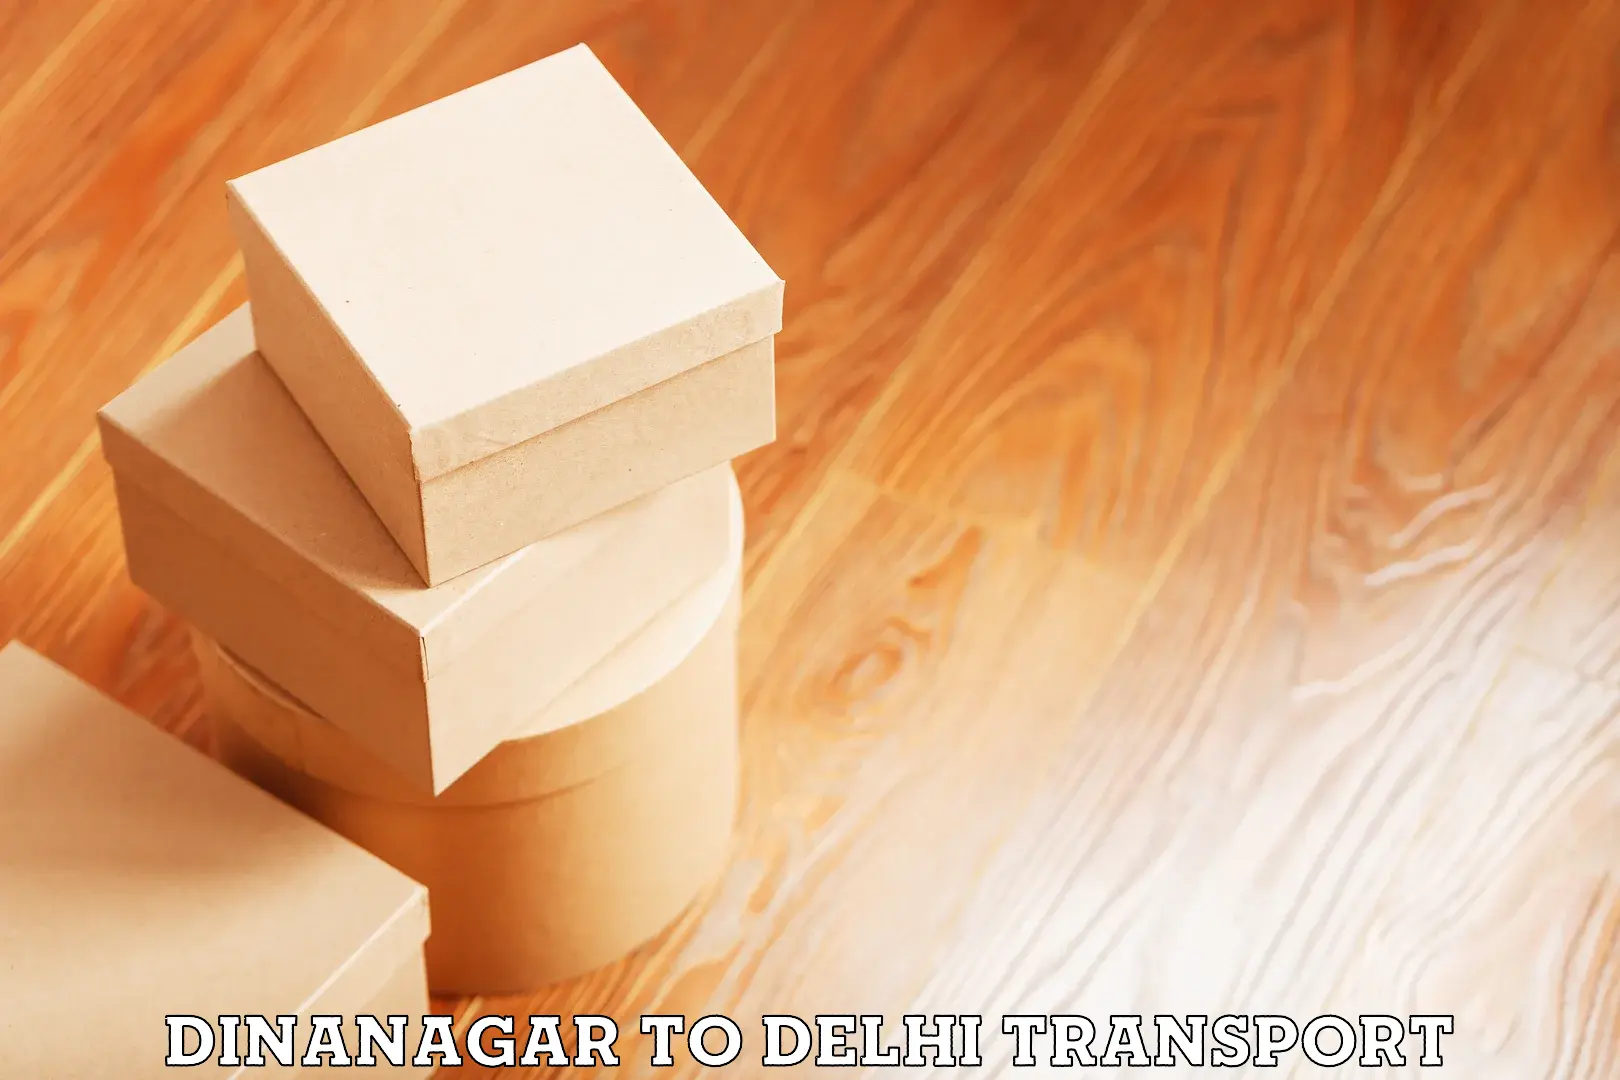 Transport in sharing Dinanagar to NCR